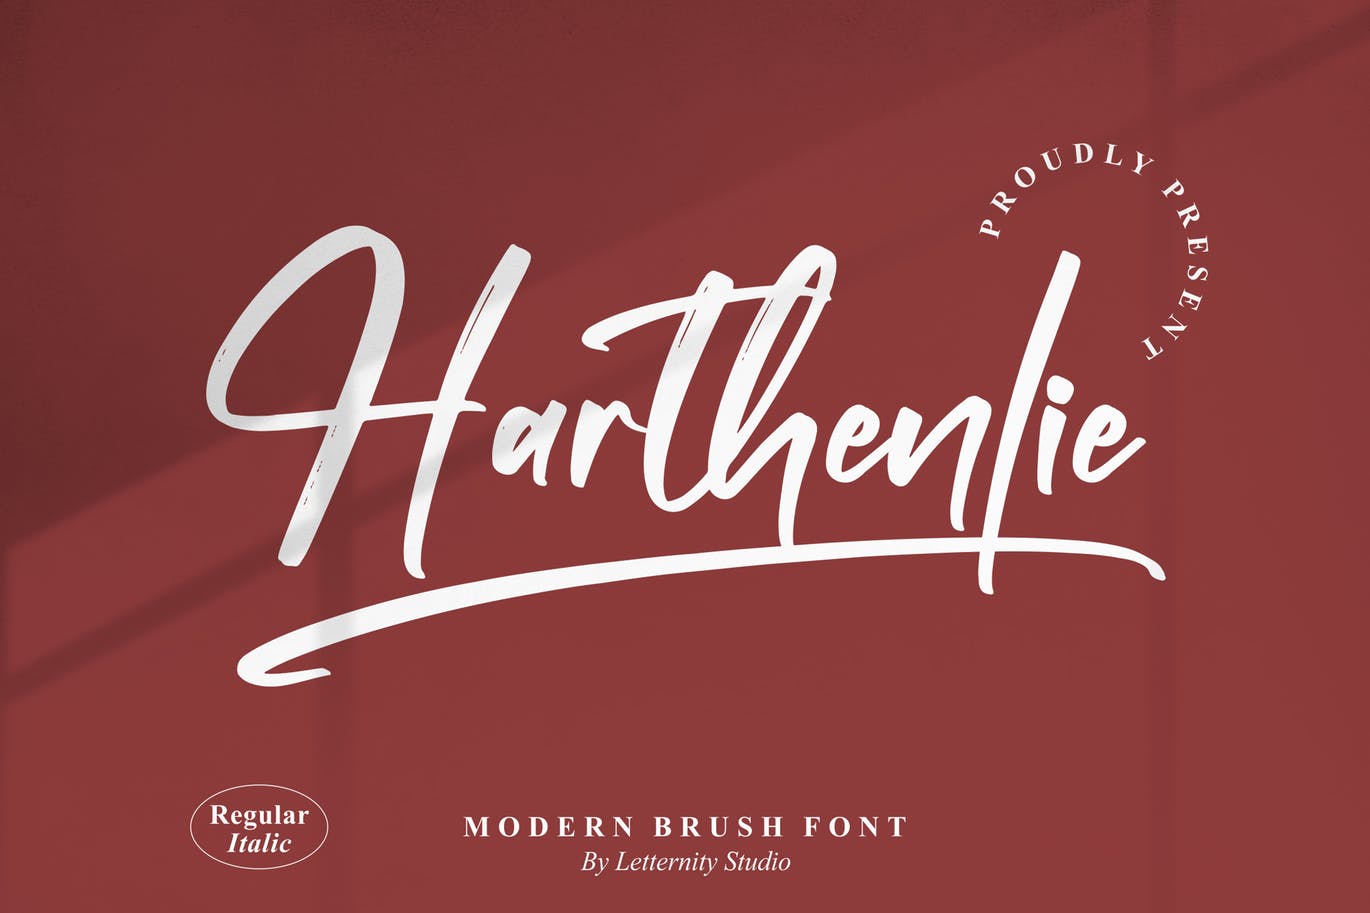 个人签名笔刷字体素材 Harthenlie Brush Font 设计素材 第1张